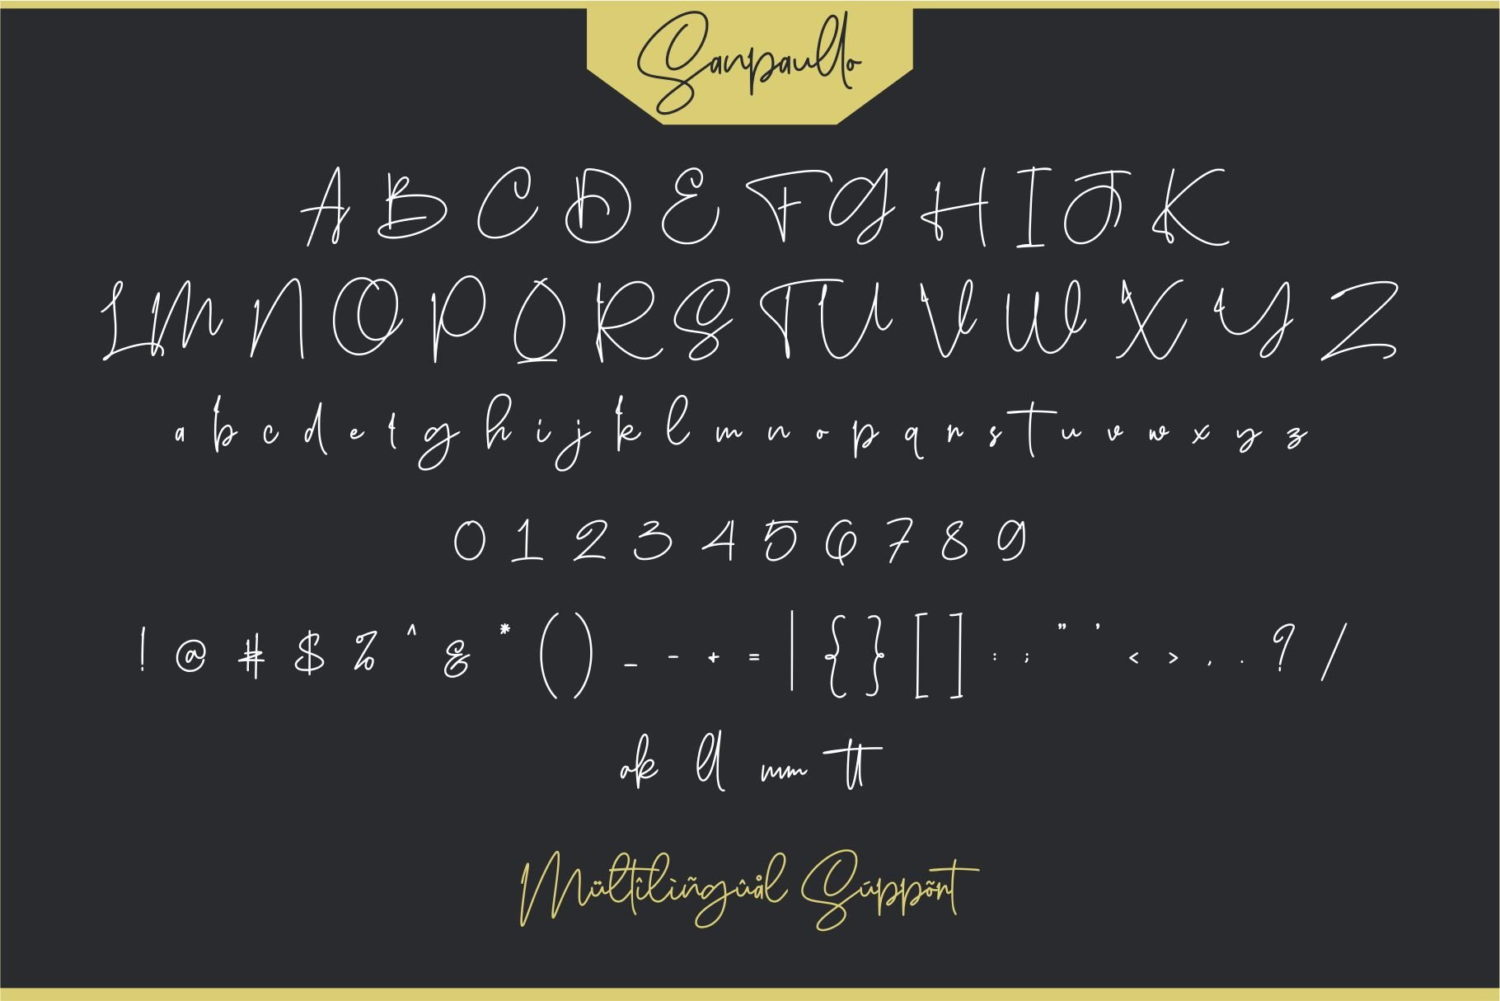 Free Sanpaullo Signature Font